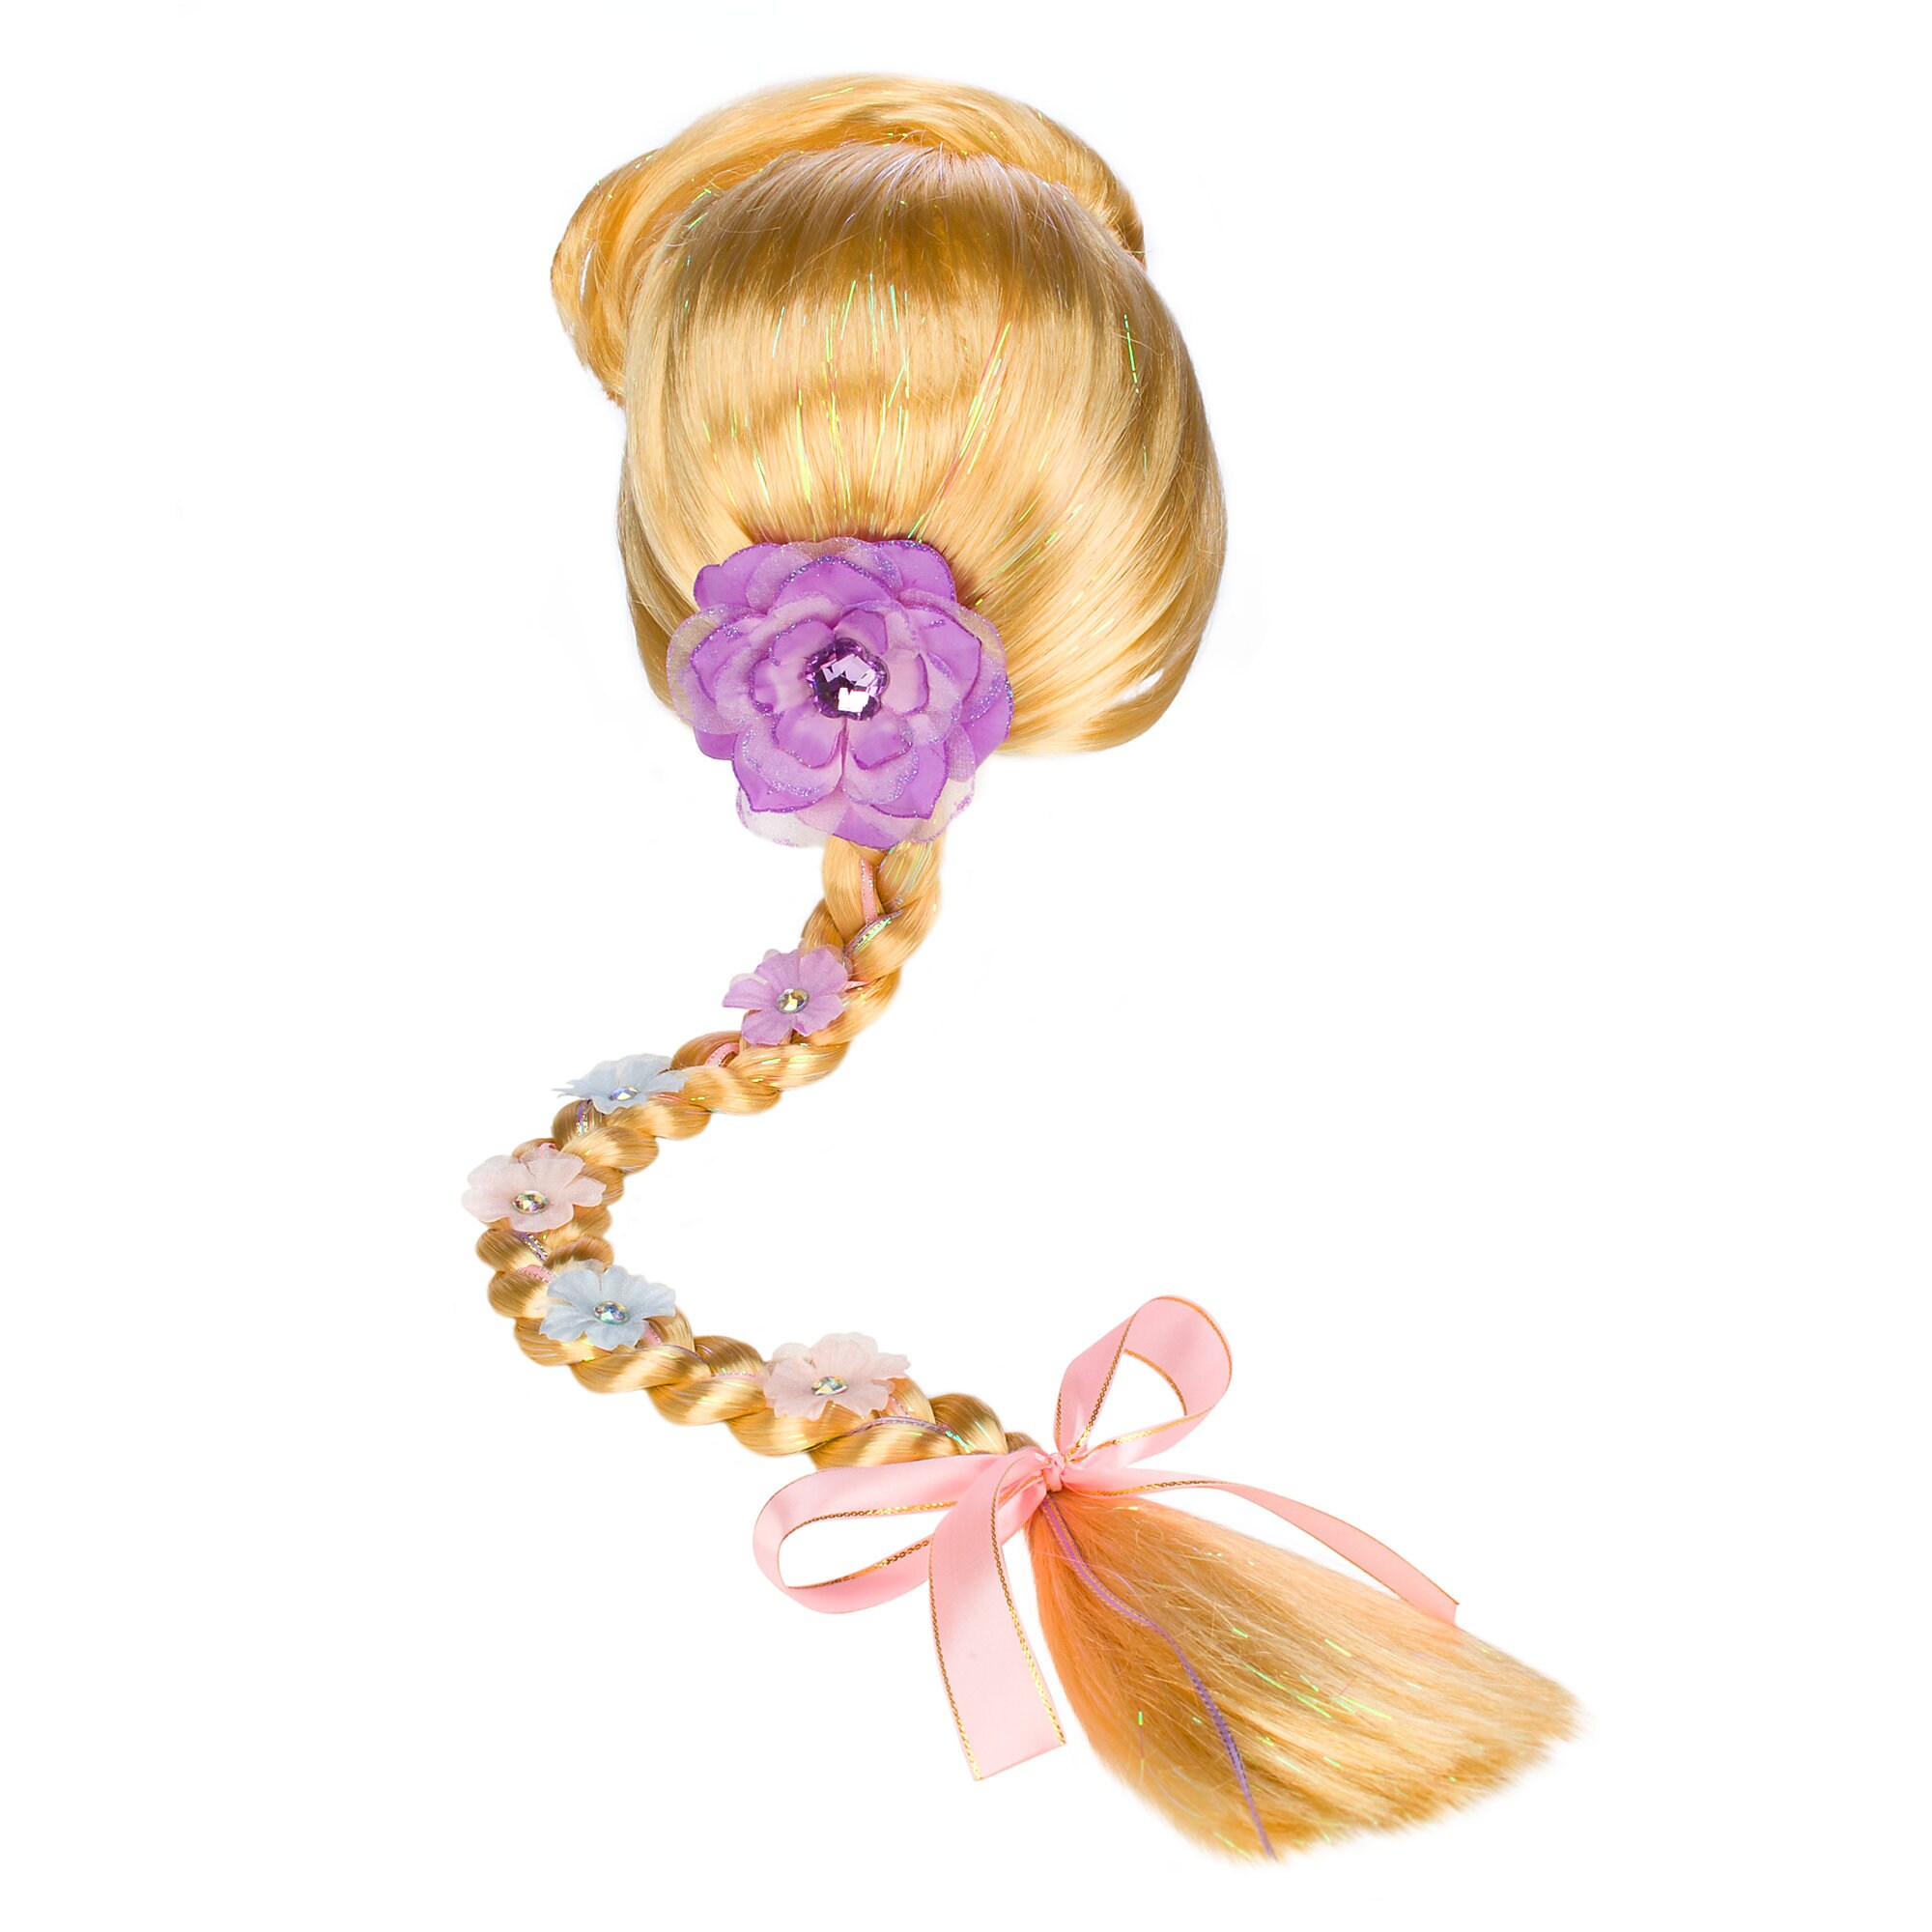 Rapunzel Wig with Braid